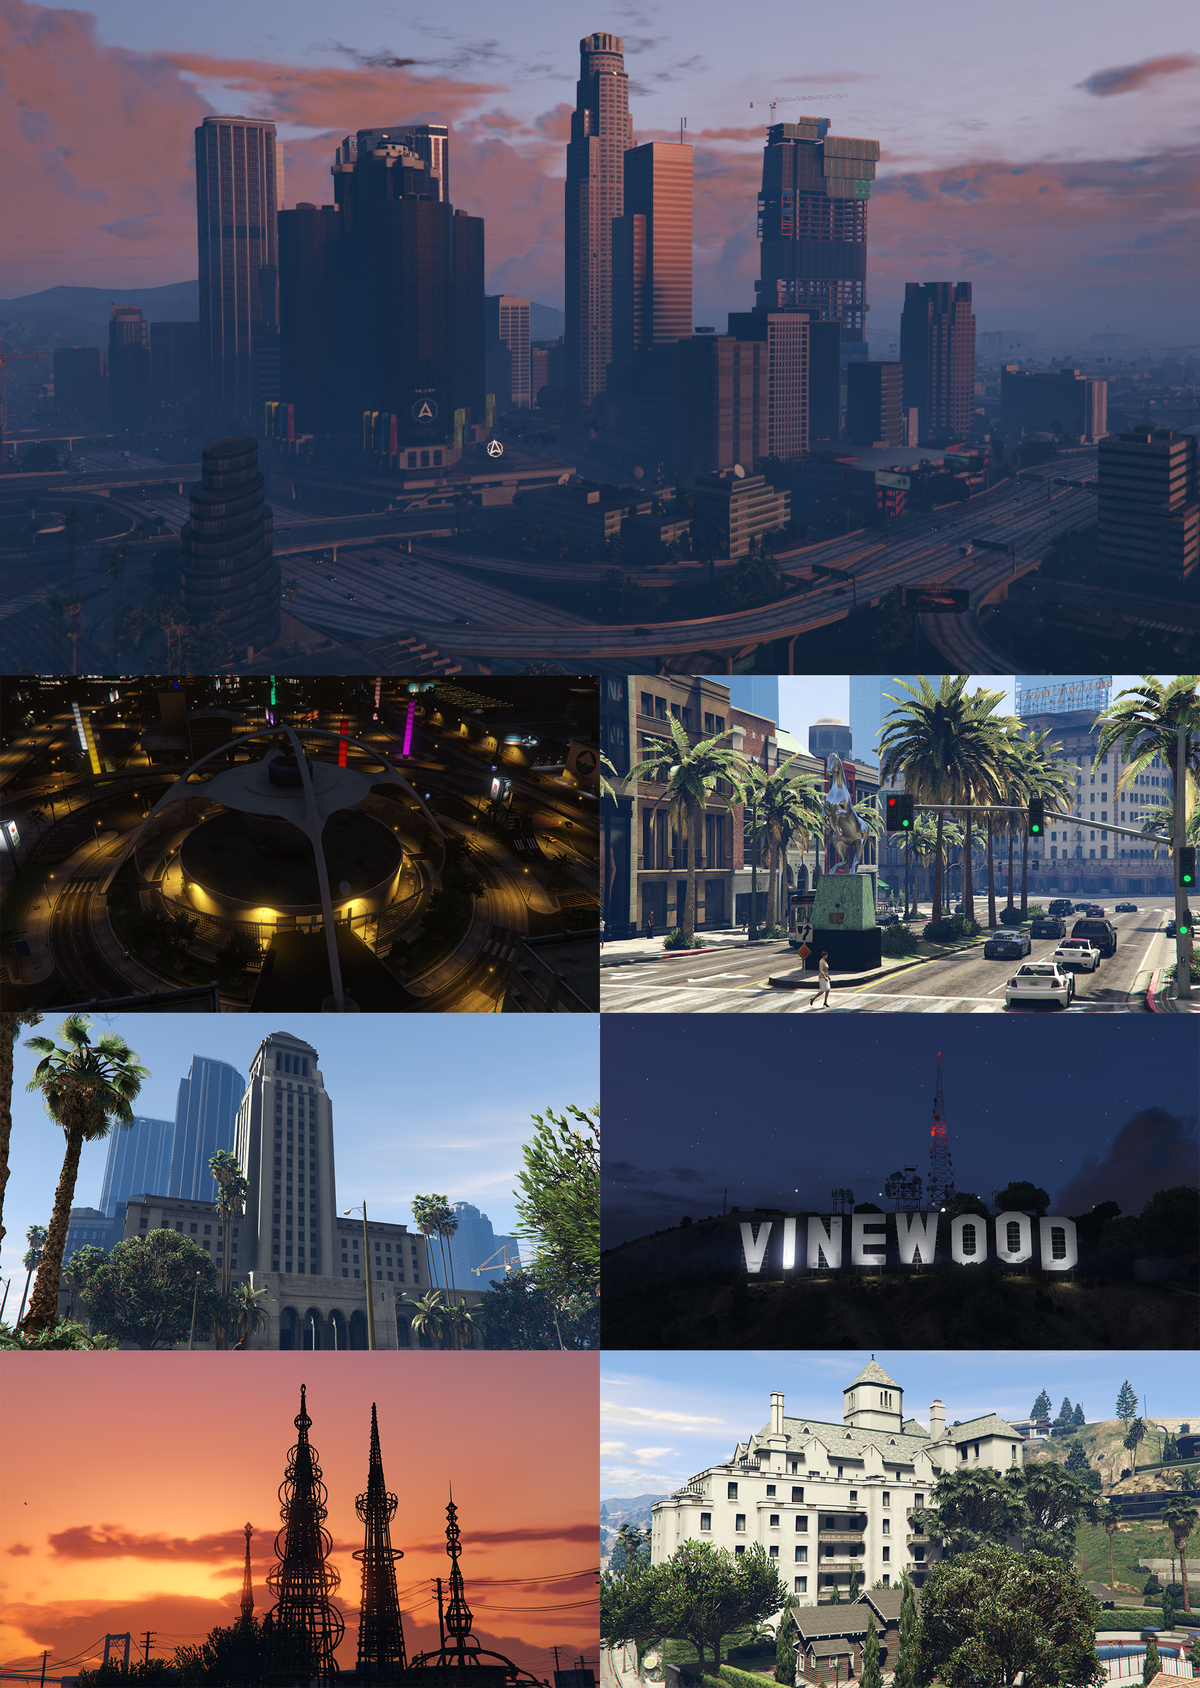 GTA - một trong những trò chơi hành động được yêu thích nhất thế giới, với bối cảnh là thành phố Los Santos sôi động và phong phú. Hình ảnh liên quan đến trò chơi này sẽ khiến bạn thấy mình như đang tham gia vào trò chơi thật sự, cảm thấy thú vị và hứng thú hơn trong quá trình chơi.